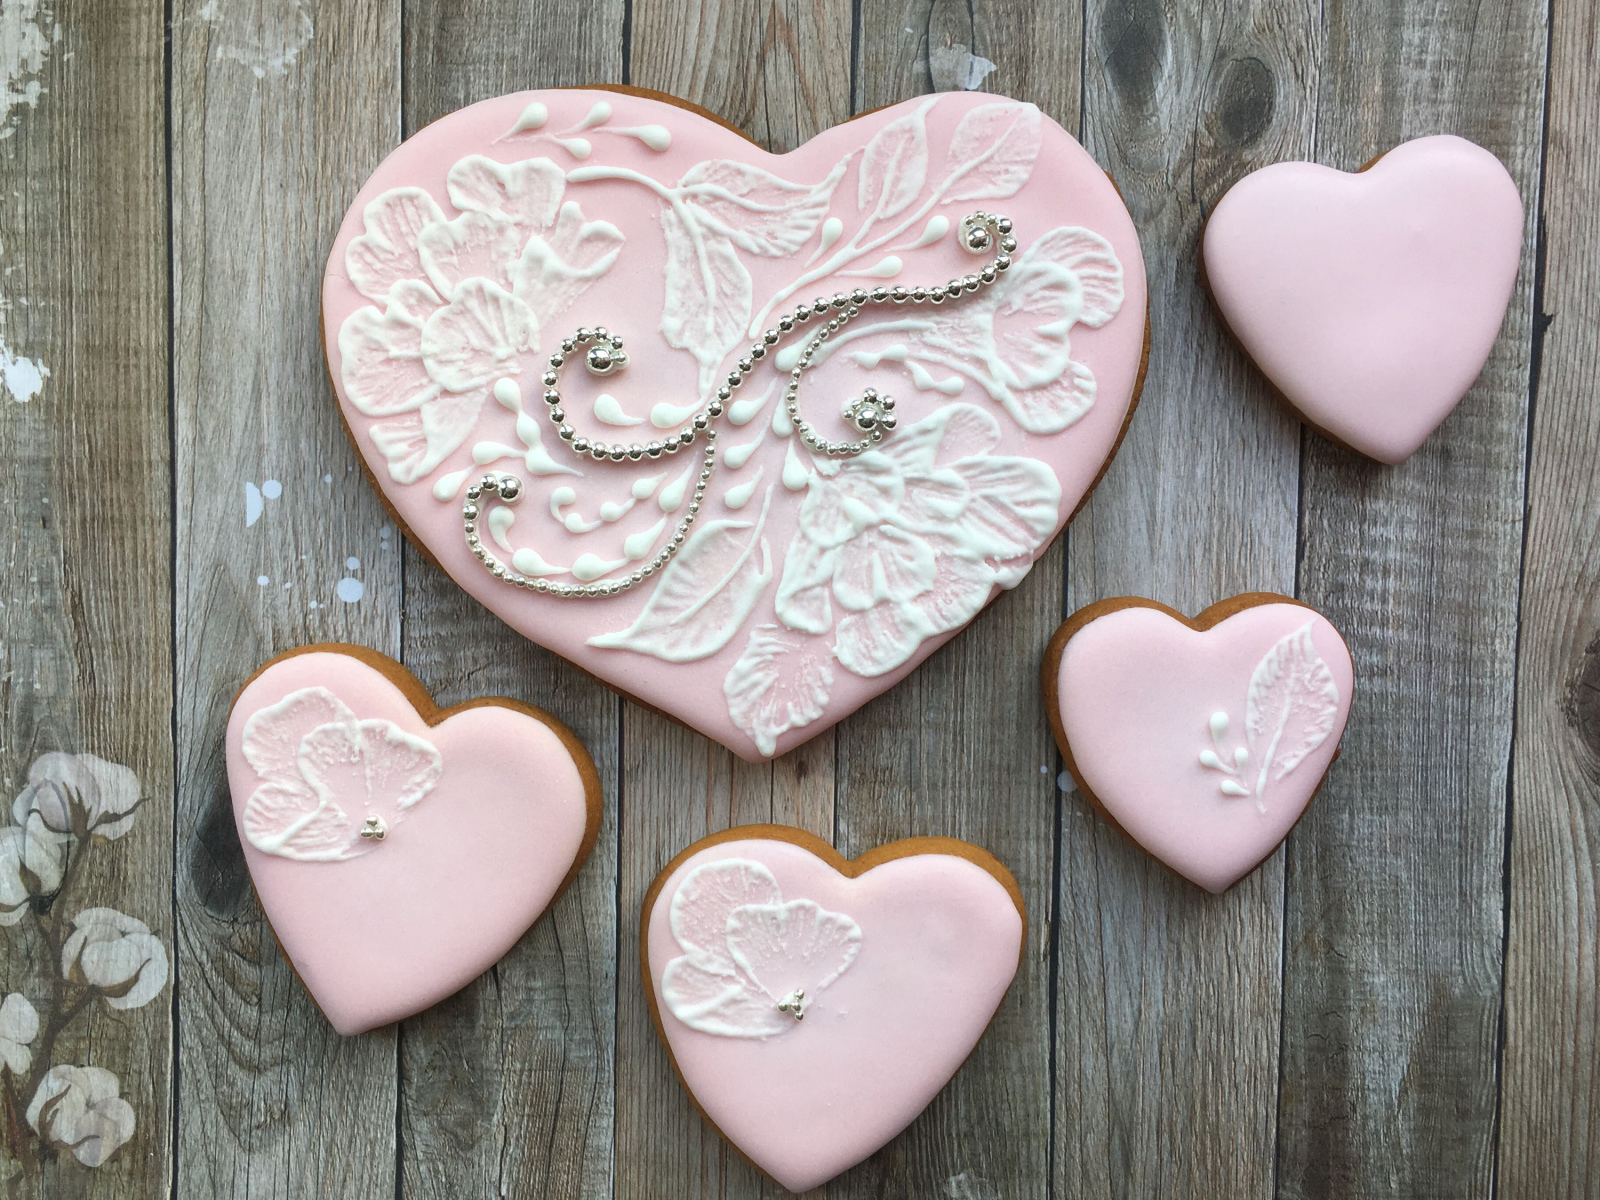 Печенье в форме сердца с розовой глазурью на столе